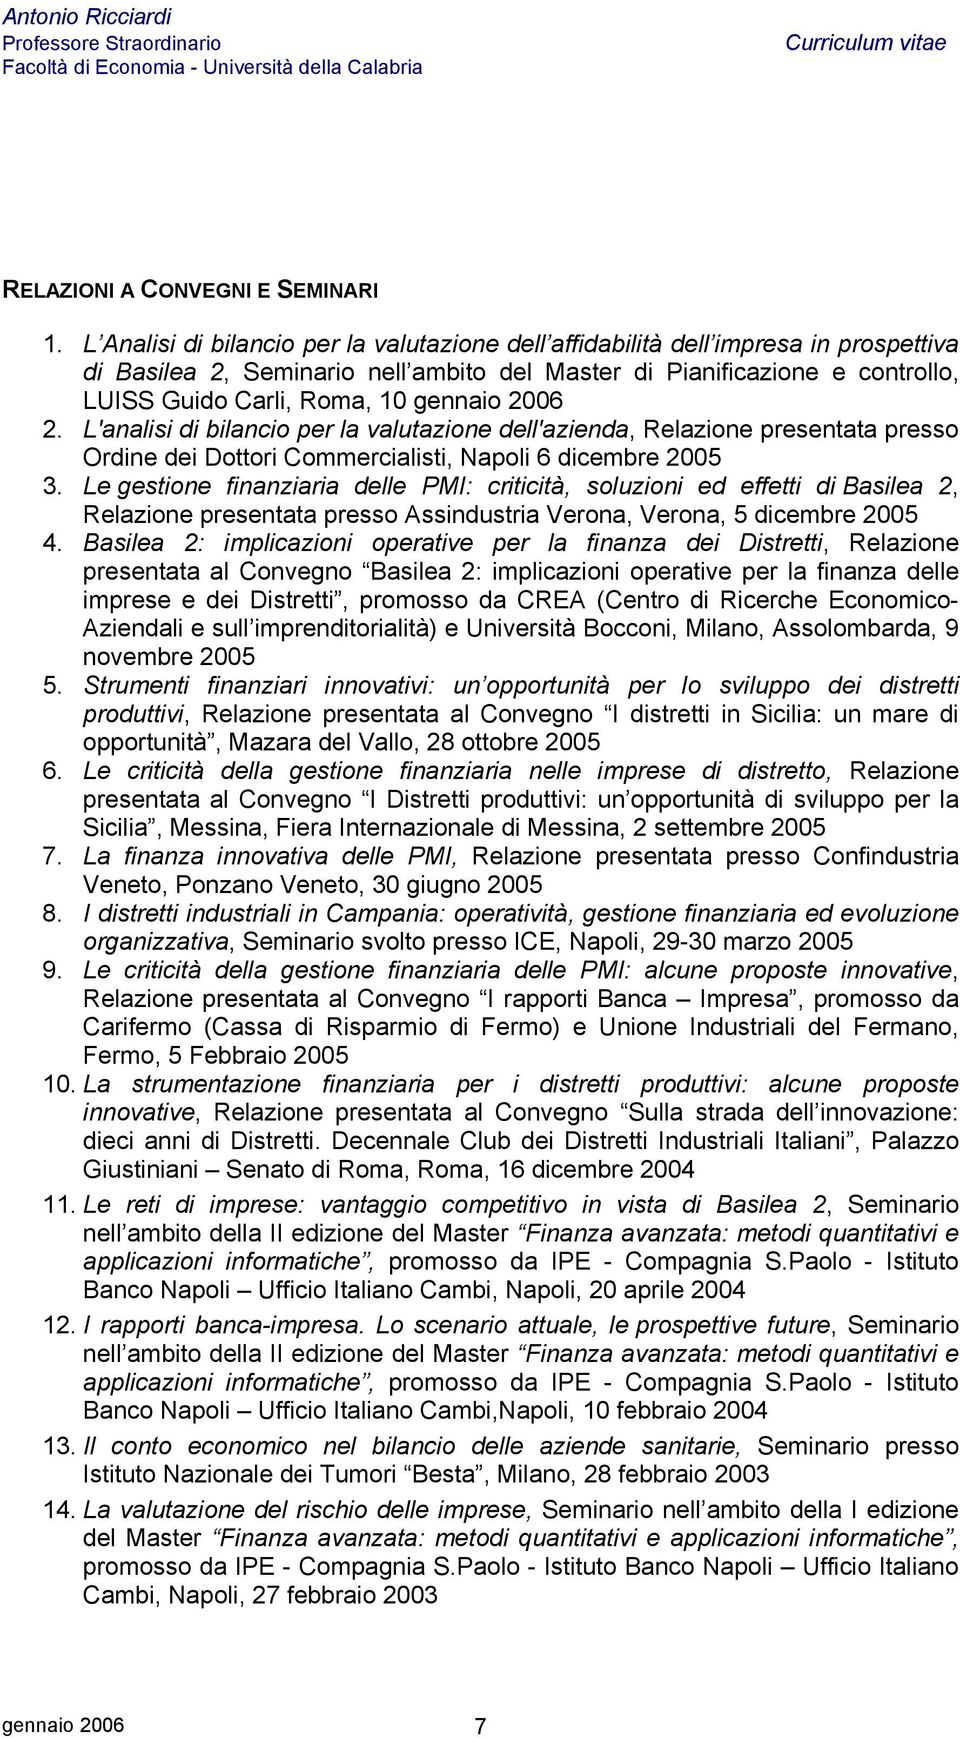 gennaio 2006 2. L'analisi di bilancio per la valutazione dell'azienda, Relazione presentata presso Ordine dei Dottori Commercialisti, Napoli 6 dicembre 2005 3.